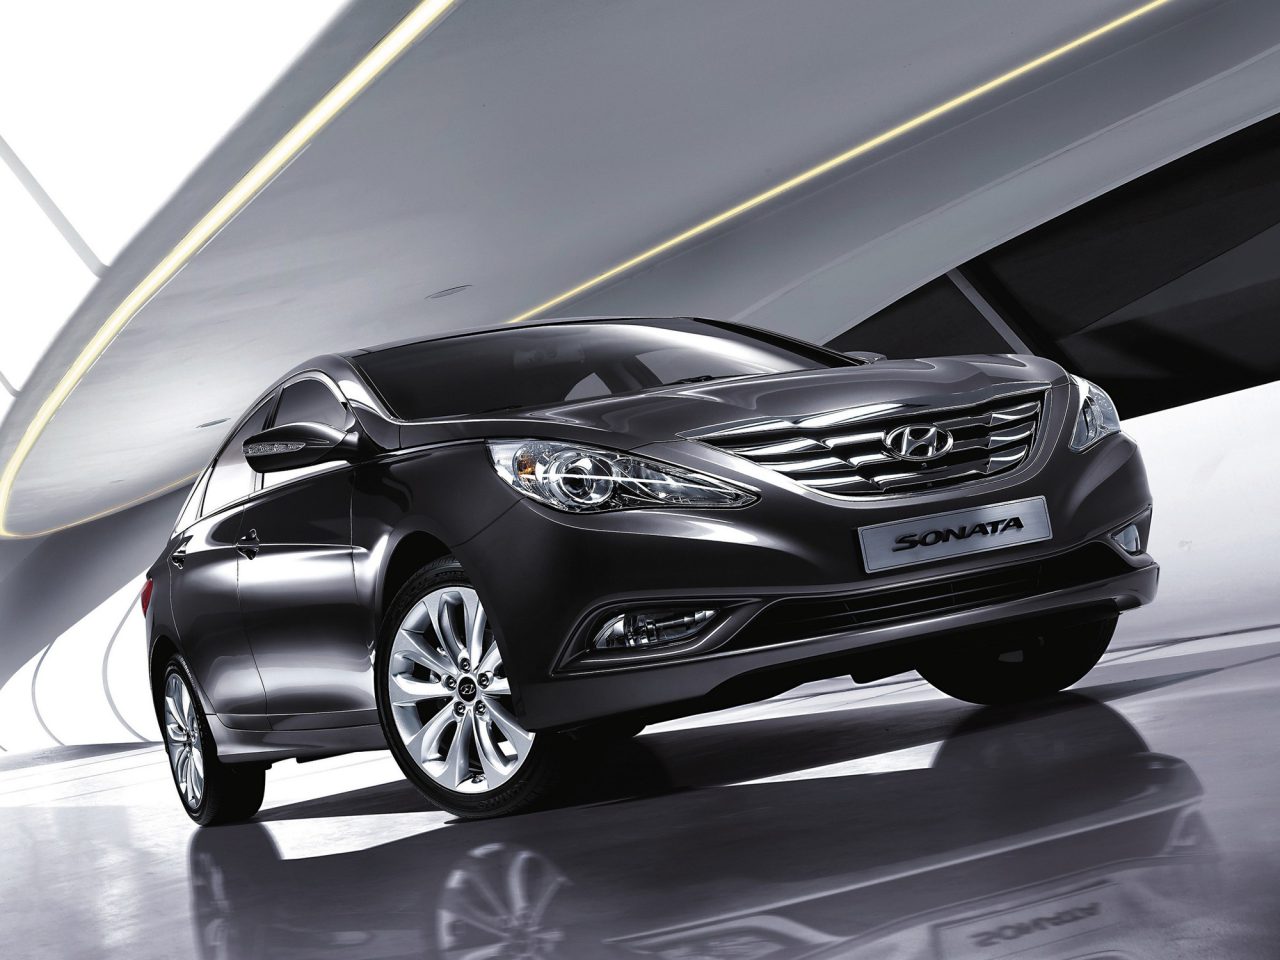 Особенности и преимущества автомобилей марки Hyundai